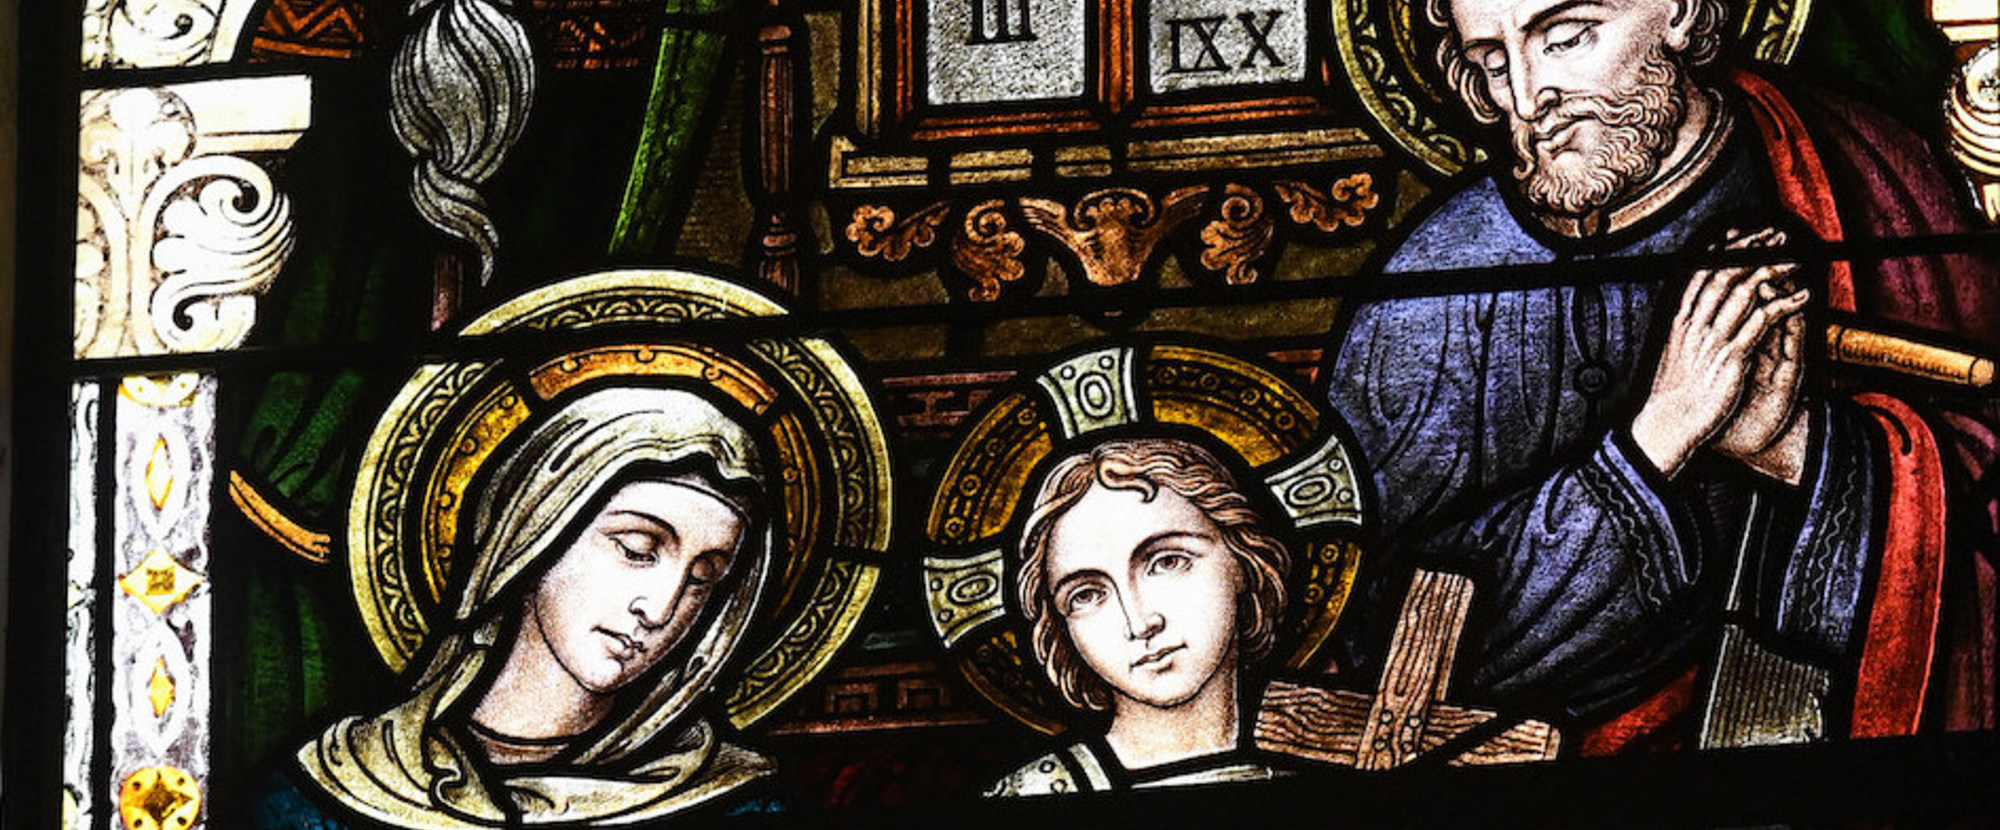 Kirchenfenster mit einer Darstellung der Heiligen Familie in der Kirche Sankt Rochus in Bonn am 12. Juli 2021. Maria hat den Kopf gesenkt, Josef steht an der Werkbank und Jesus hält ein Kreuz in den Händen.